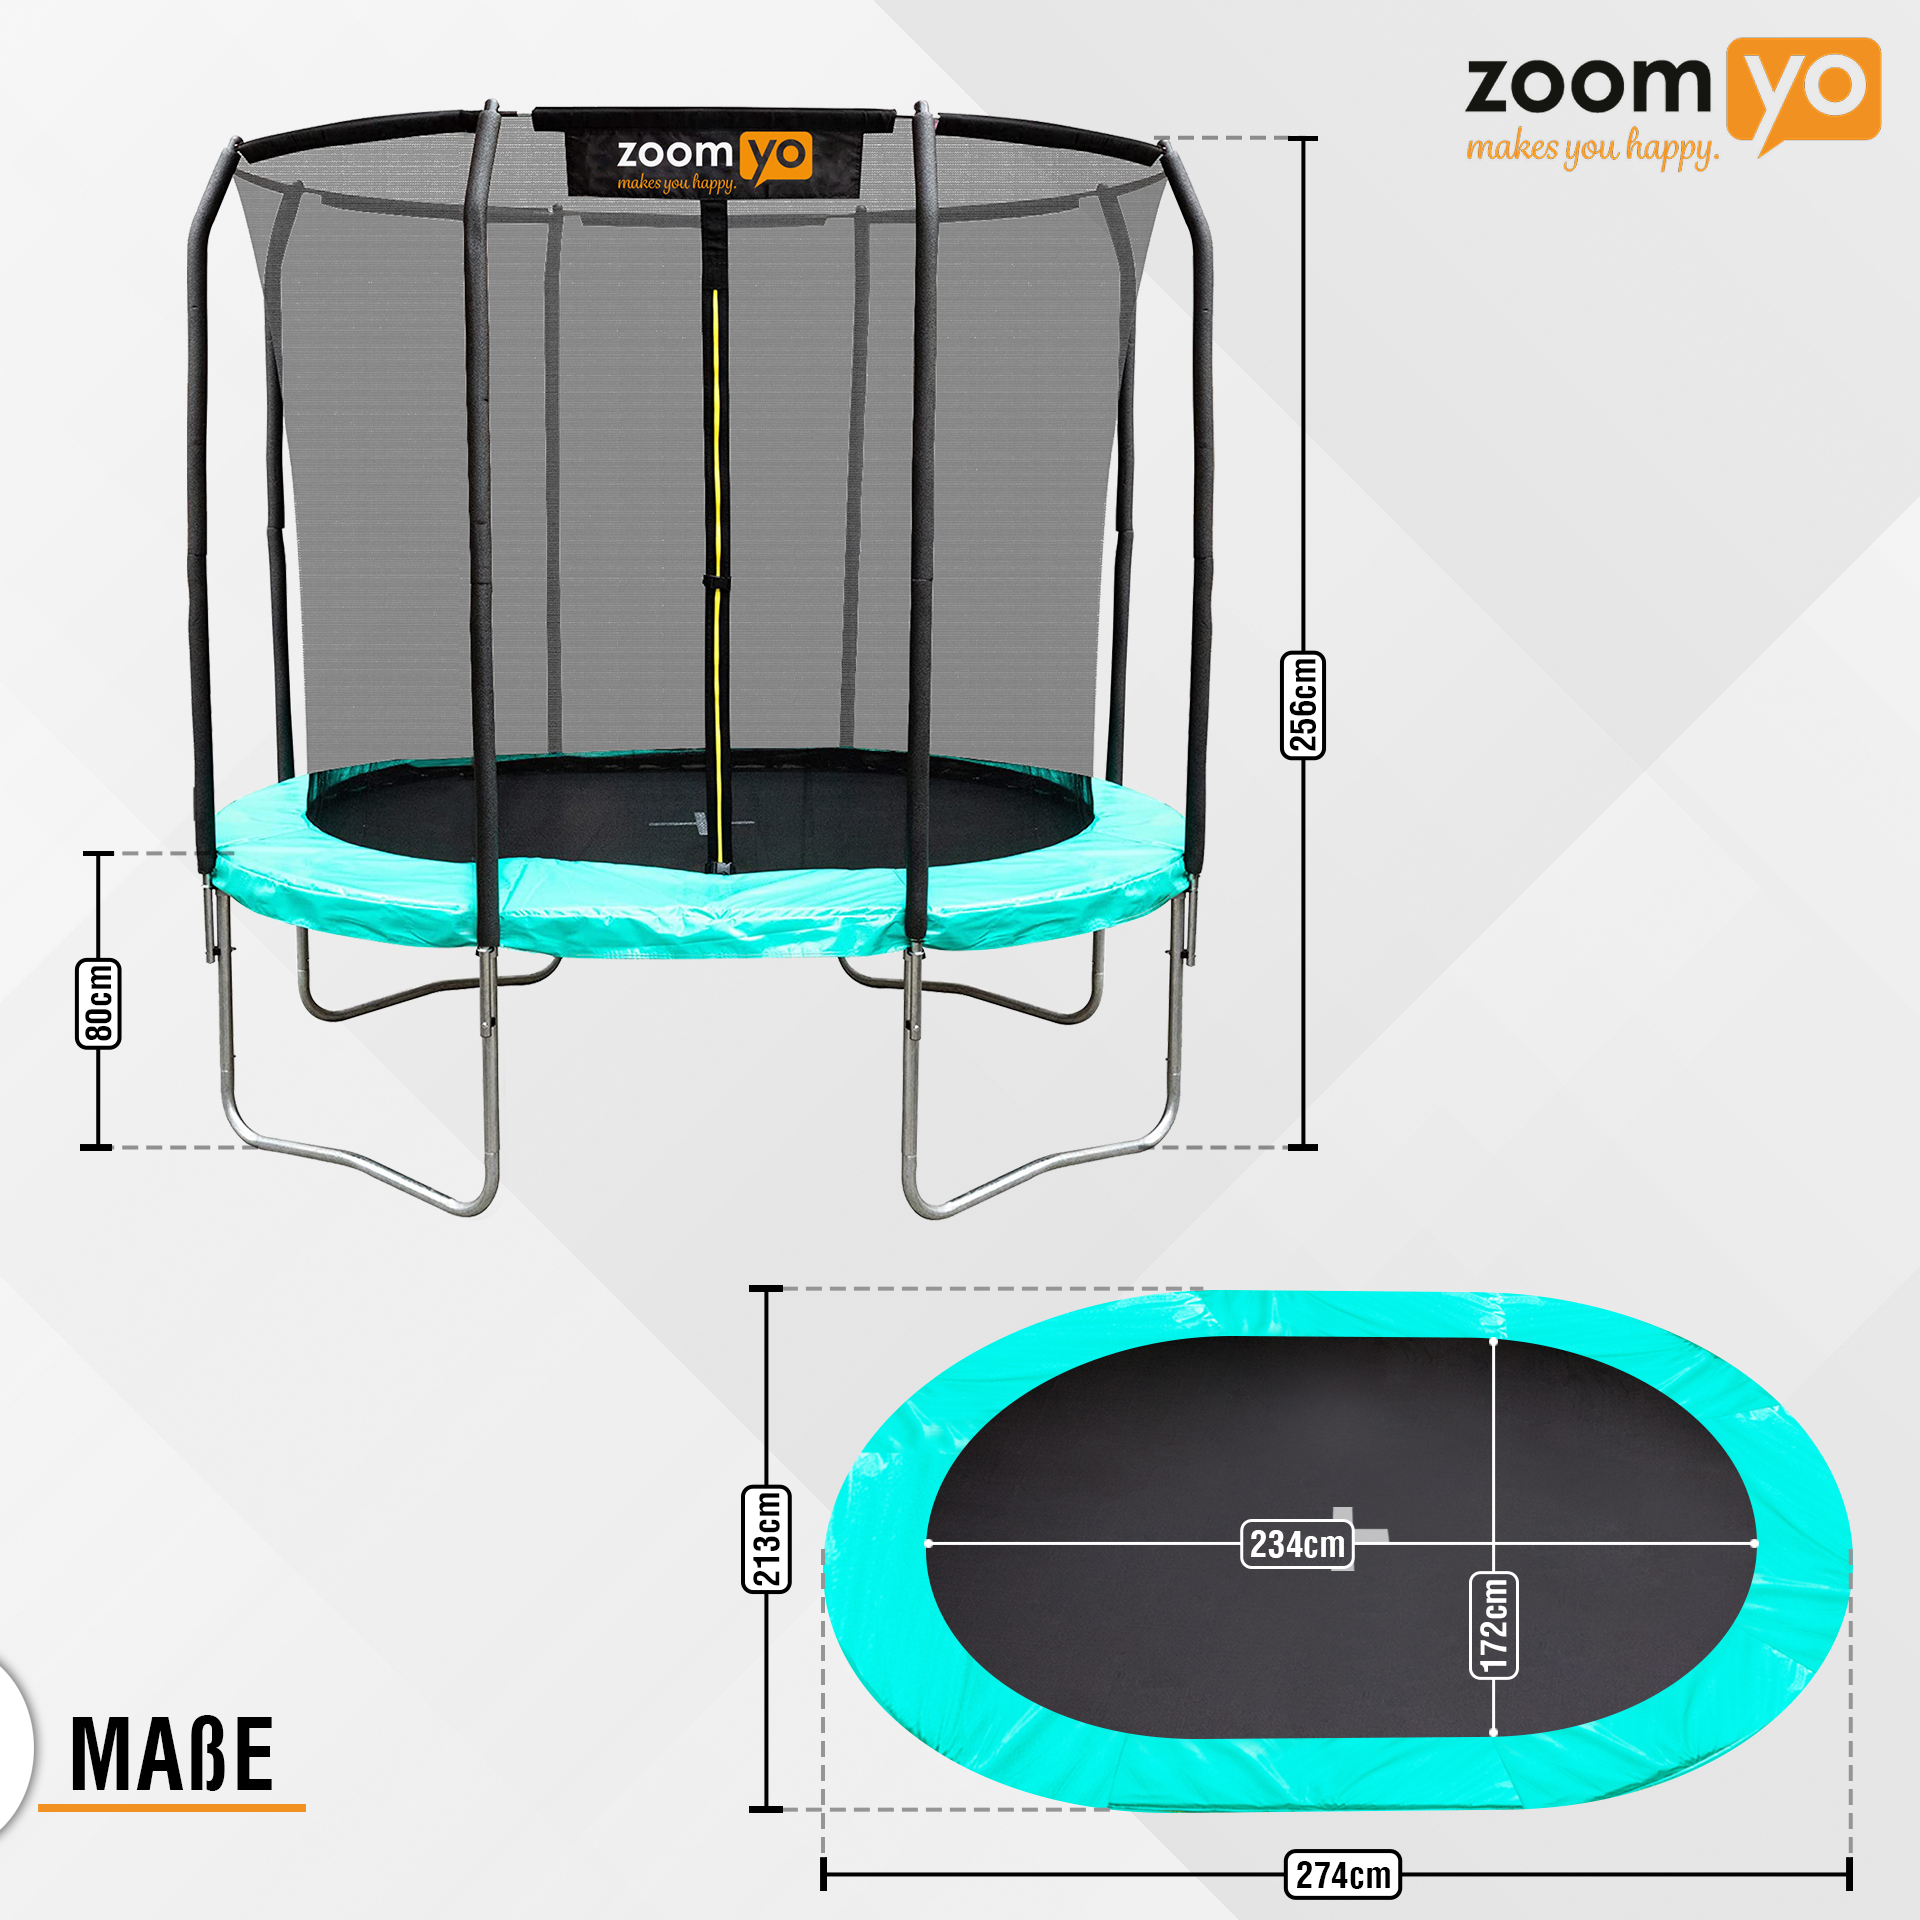 ZOOMYO Trampolin,oval,Leiter separat erhältlich,für komplexe schwarz-Grün Trampolin, Sprungtechniken